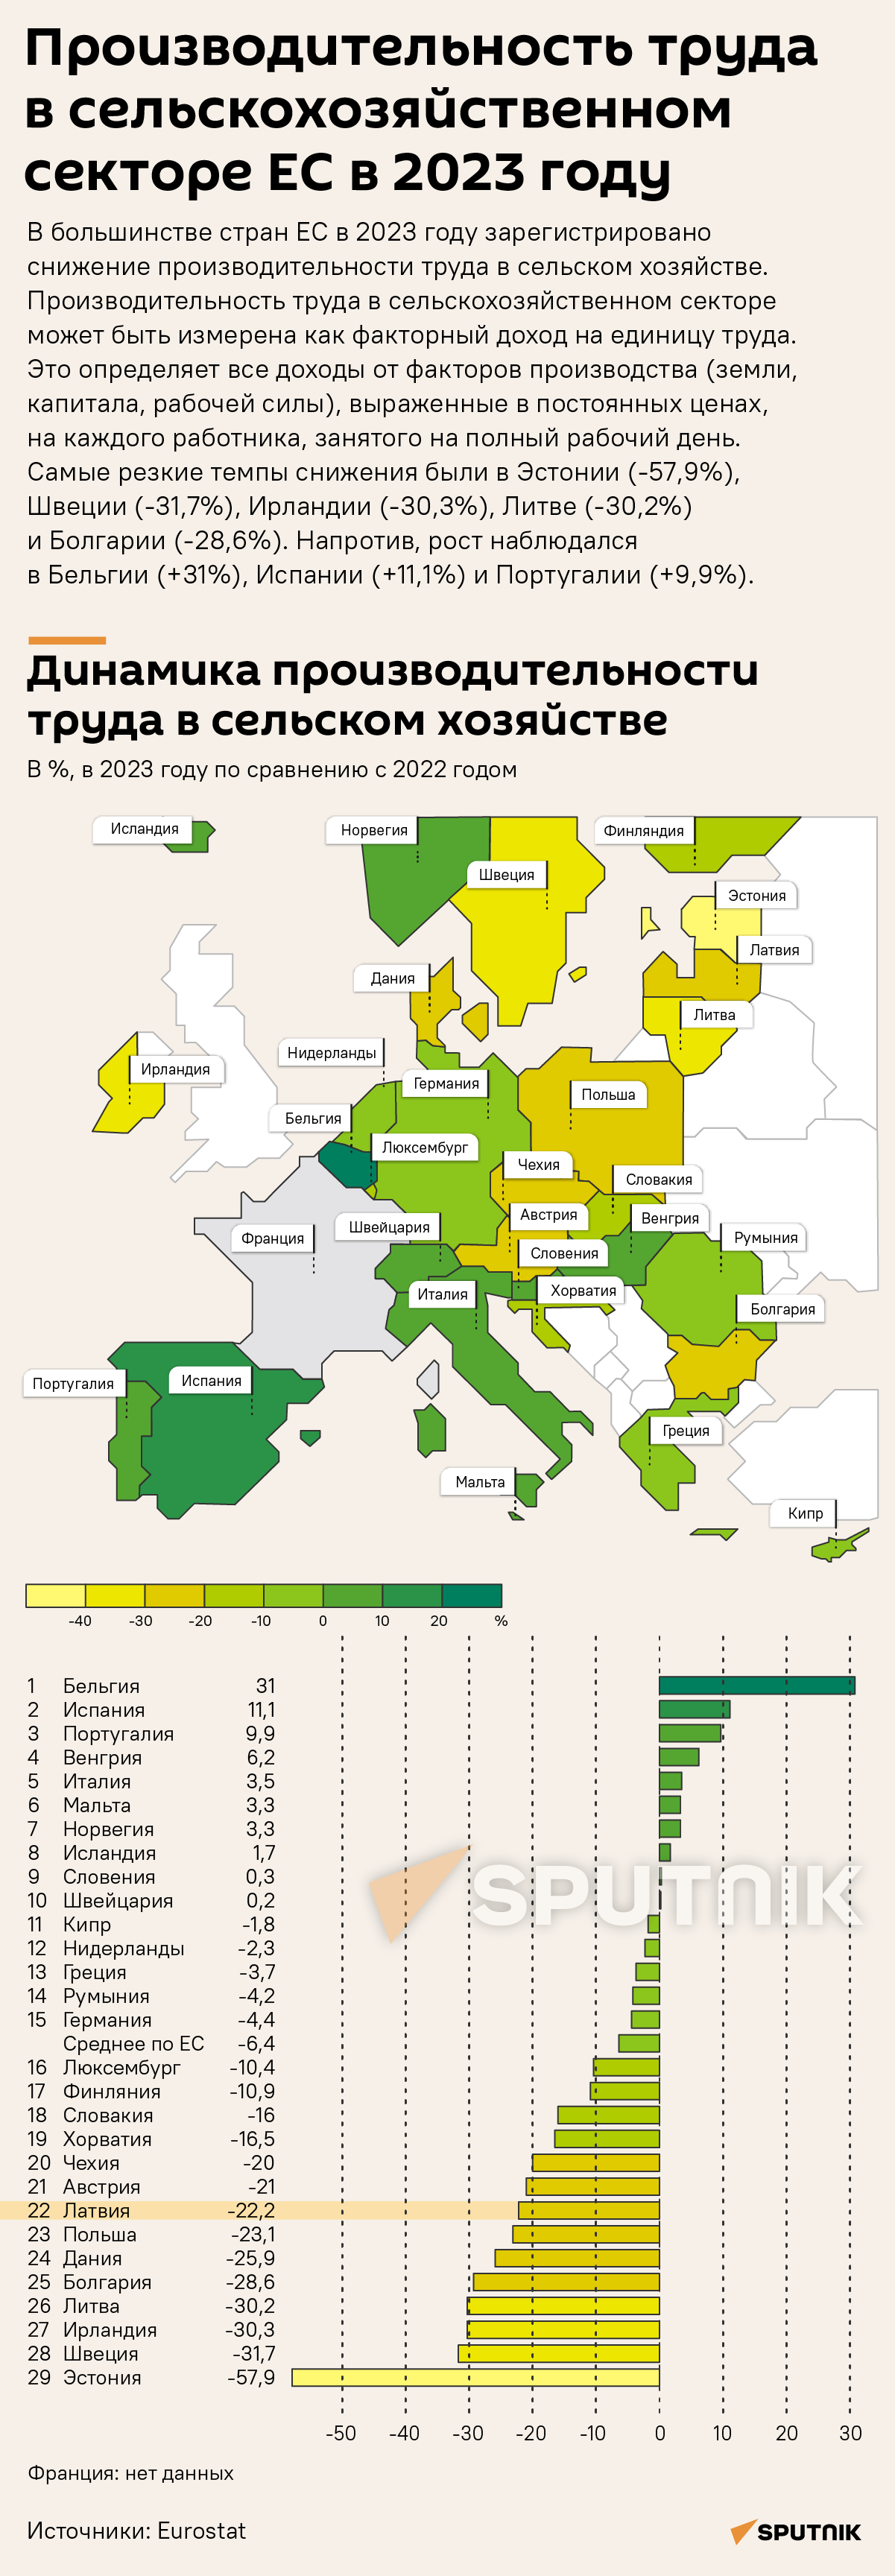 Производительность труда в сельскохозяйственном секторе ЕС в 2023 году - Sputnik Латвия